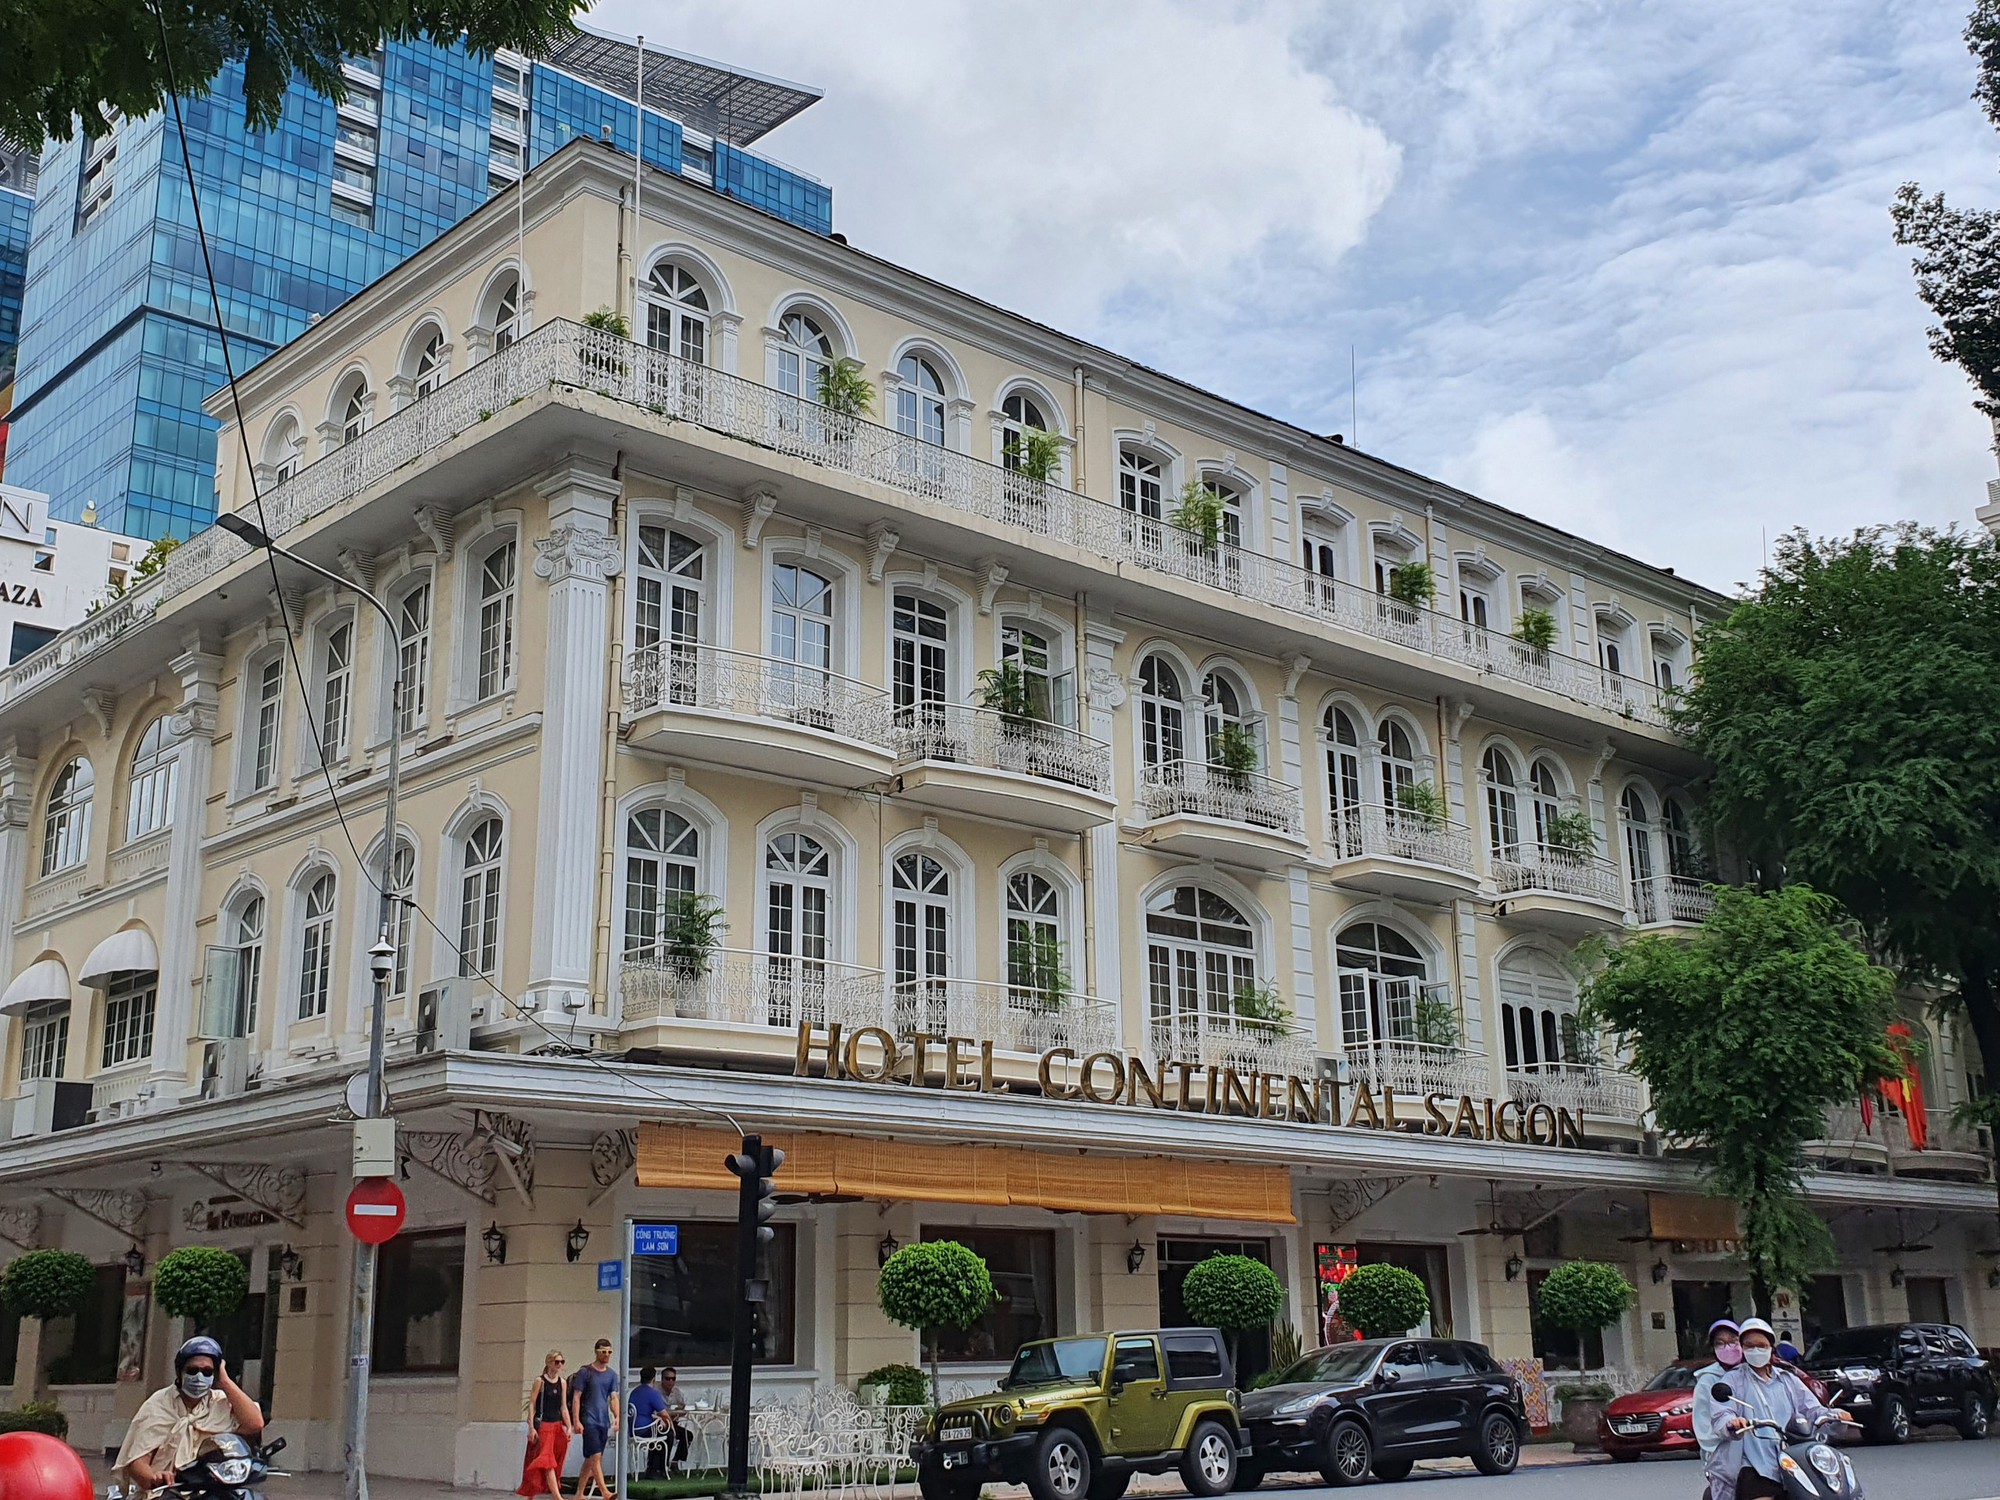 Hàng hiệu xa xỉ, khách sạn 5 sao, thiên đường mua sắm chen nhau trên con đường dát vàng ở Sài Gòn - Ảnh 3.